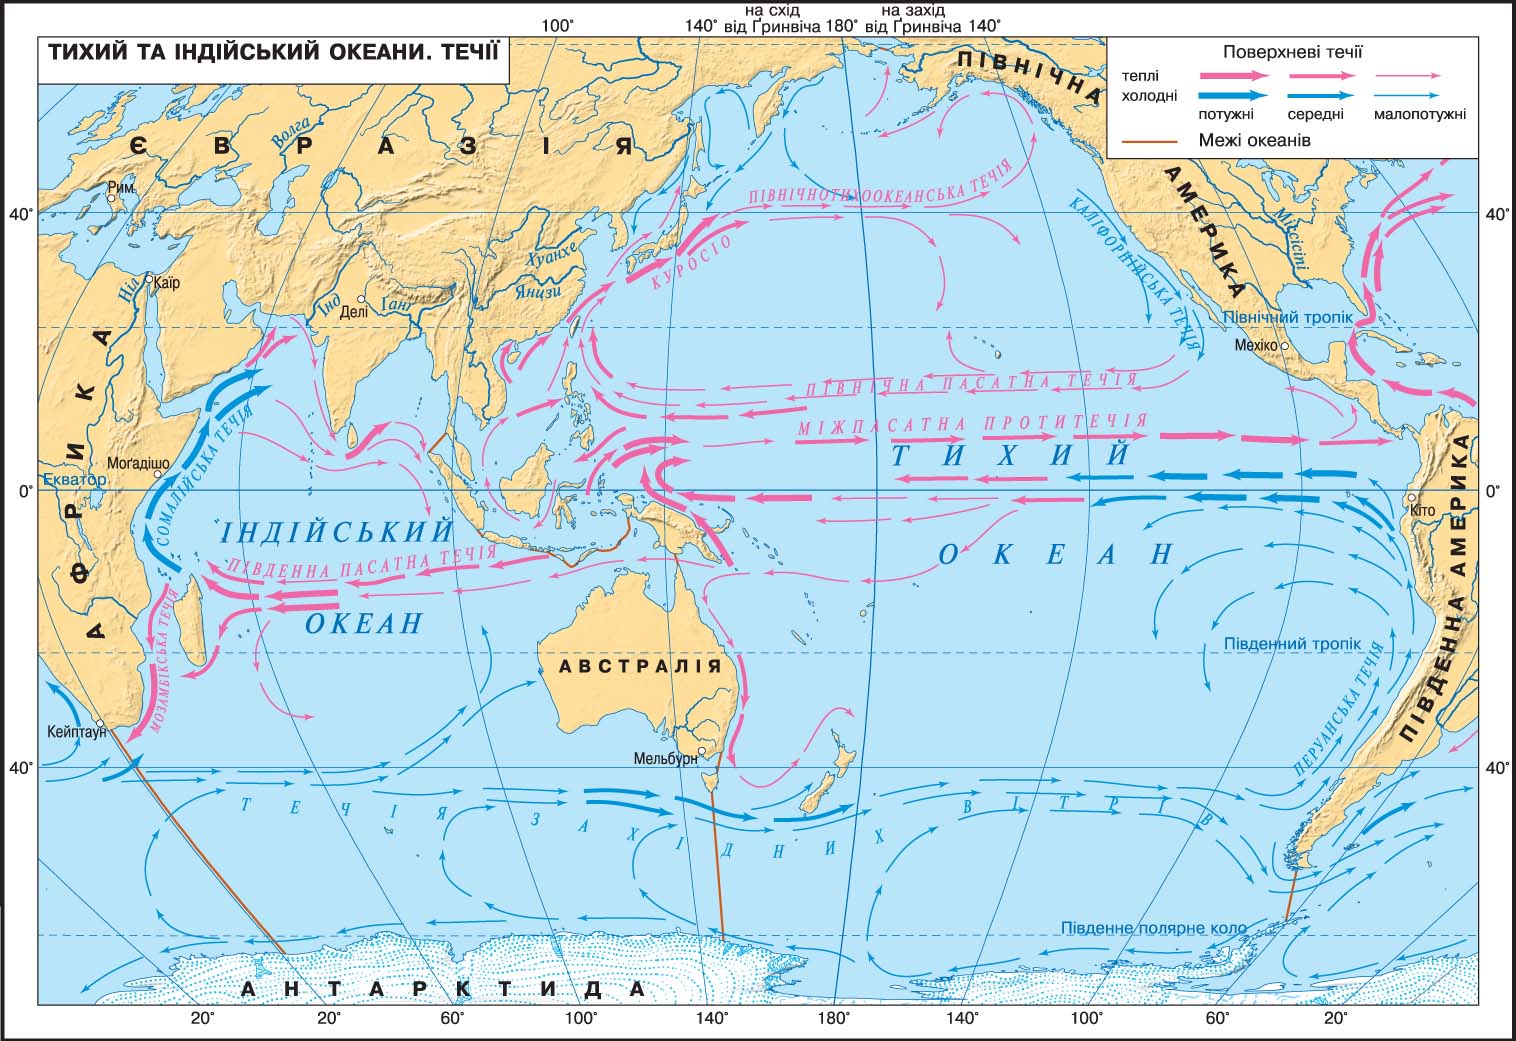 3 течения тихого океана. Карта течений Тихого океана. Тихий океан карта 7 класс атлас холодные и теплые течения. Течения Тихого океана 7 класс. Течения Тихого океана теплые и холодные на карте 7.